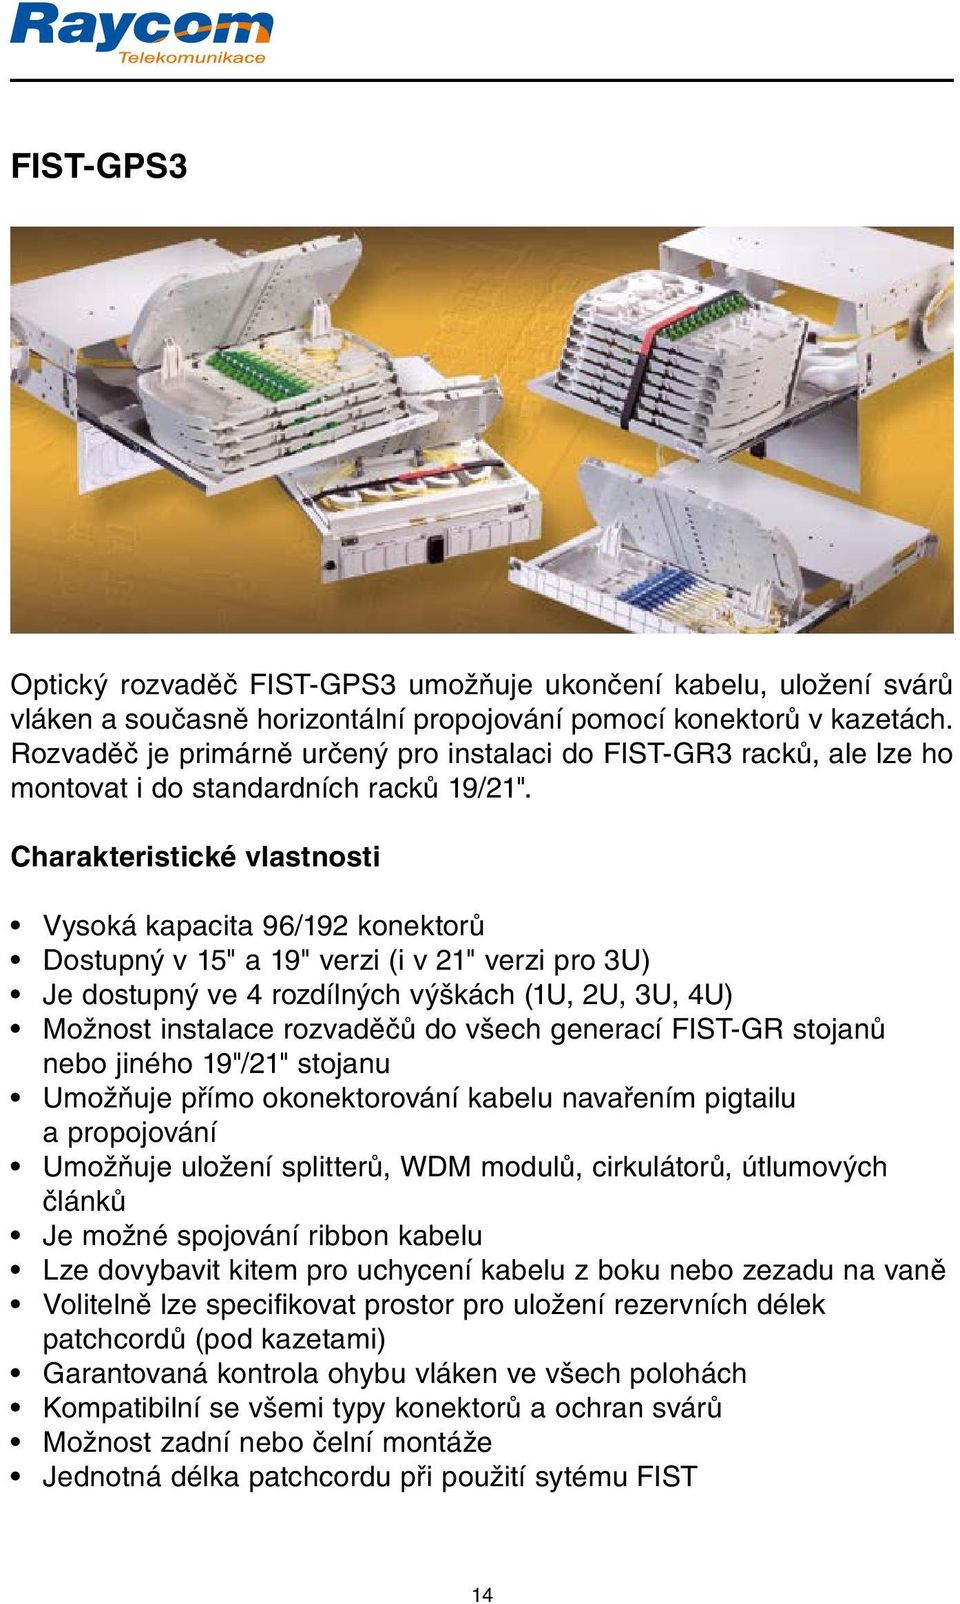 Vysoká kapacita 96/192 konektorů Dostupný v 15" a 19" verzi (i v 21" verzi pro 3U) Je dostupný ve 4 rozdílných výškách (1U, 2U, 3U, 4U) Možnost instalace rozvaděčů do všech generací FIST-GR stojanů